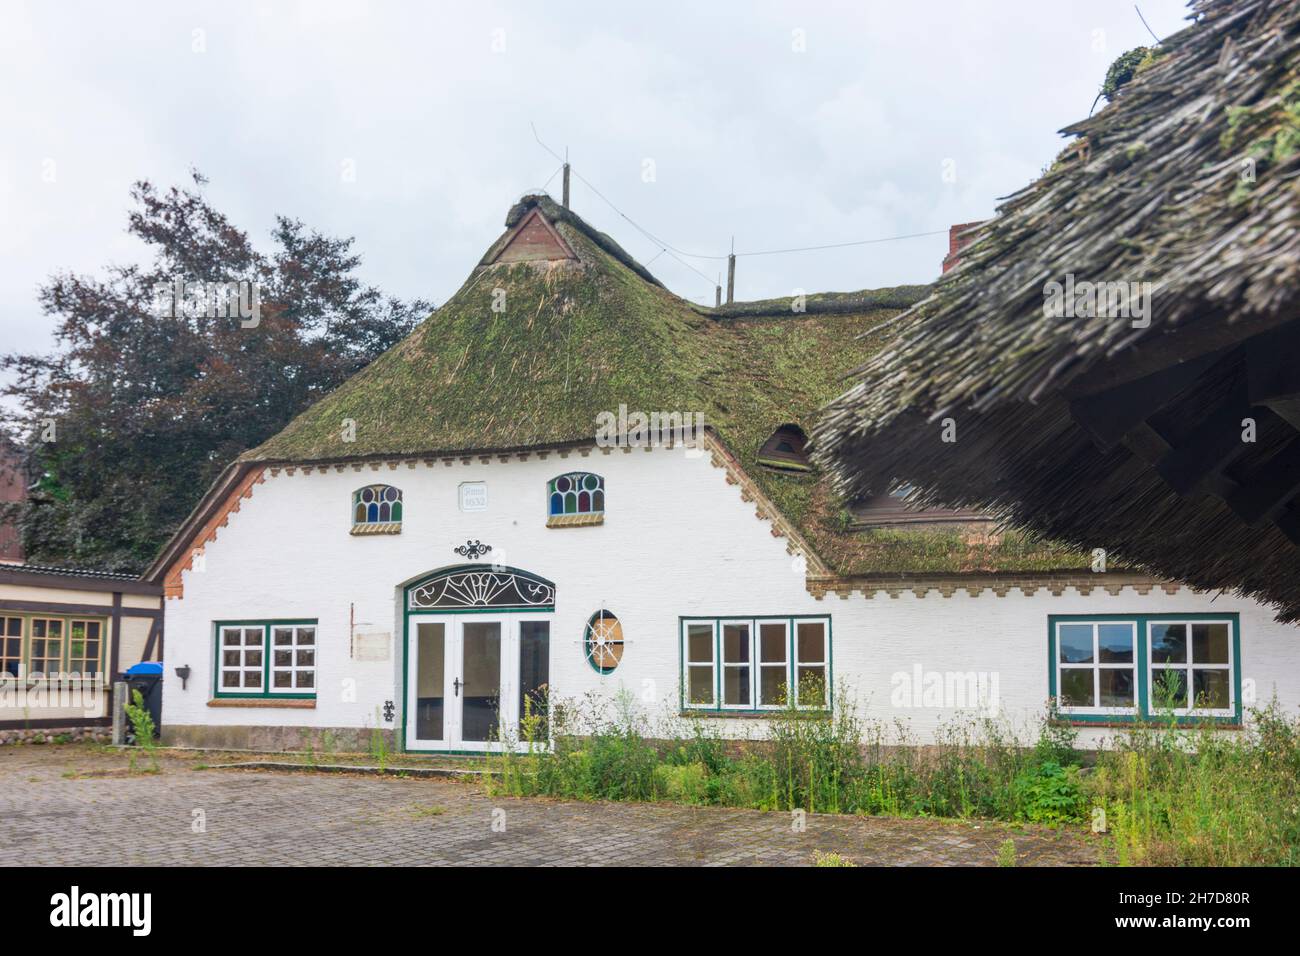 Owschlag: Maison de toit en bois à Binnenland, Schleswig-Holstein, Allemagne Banque D'Images